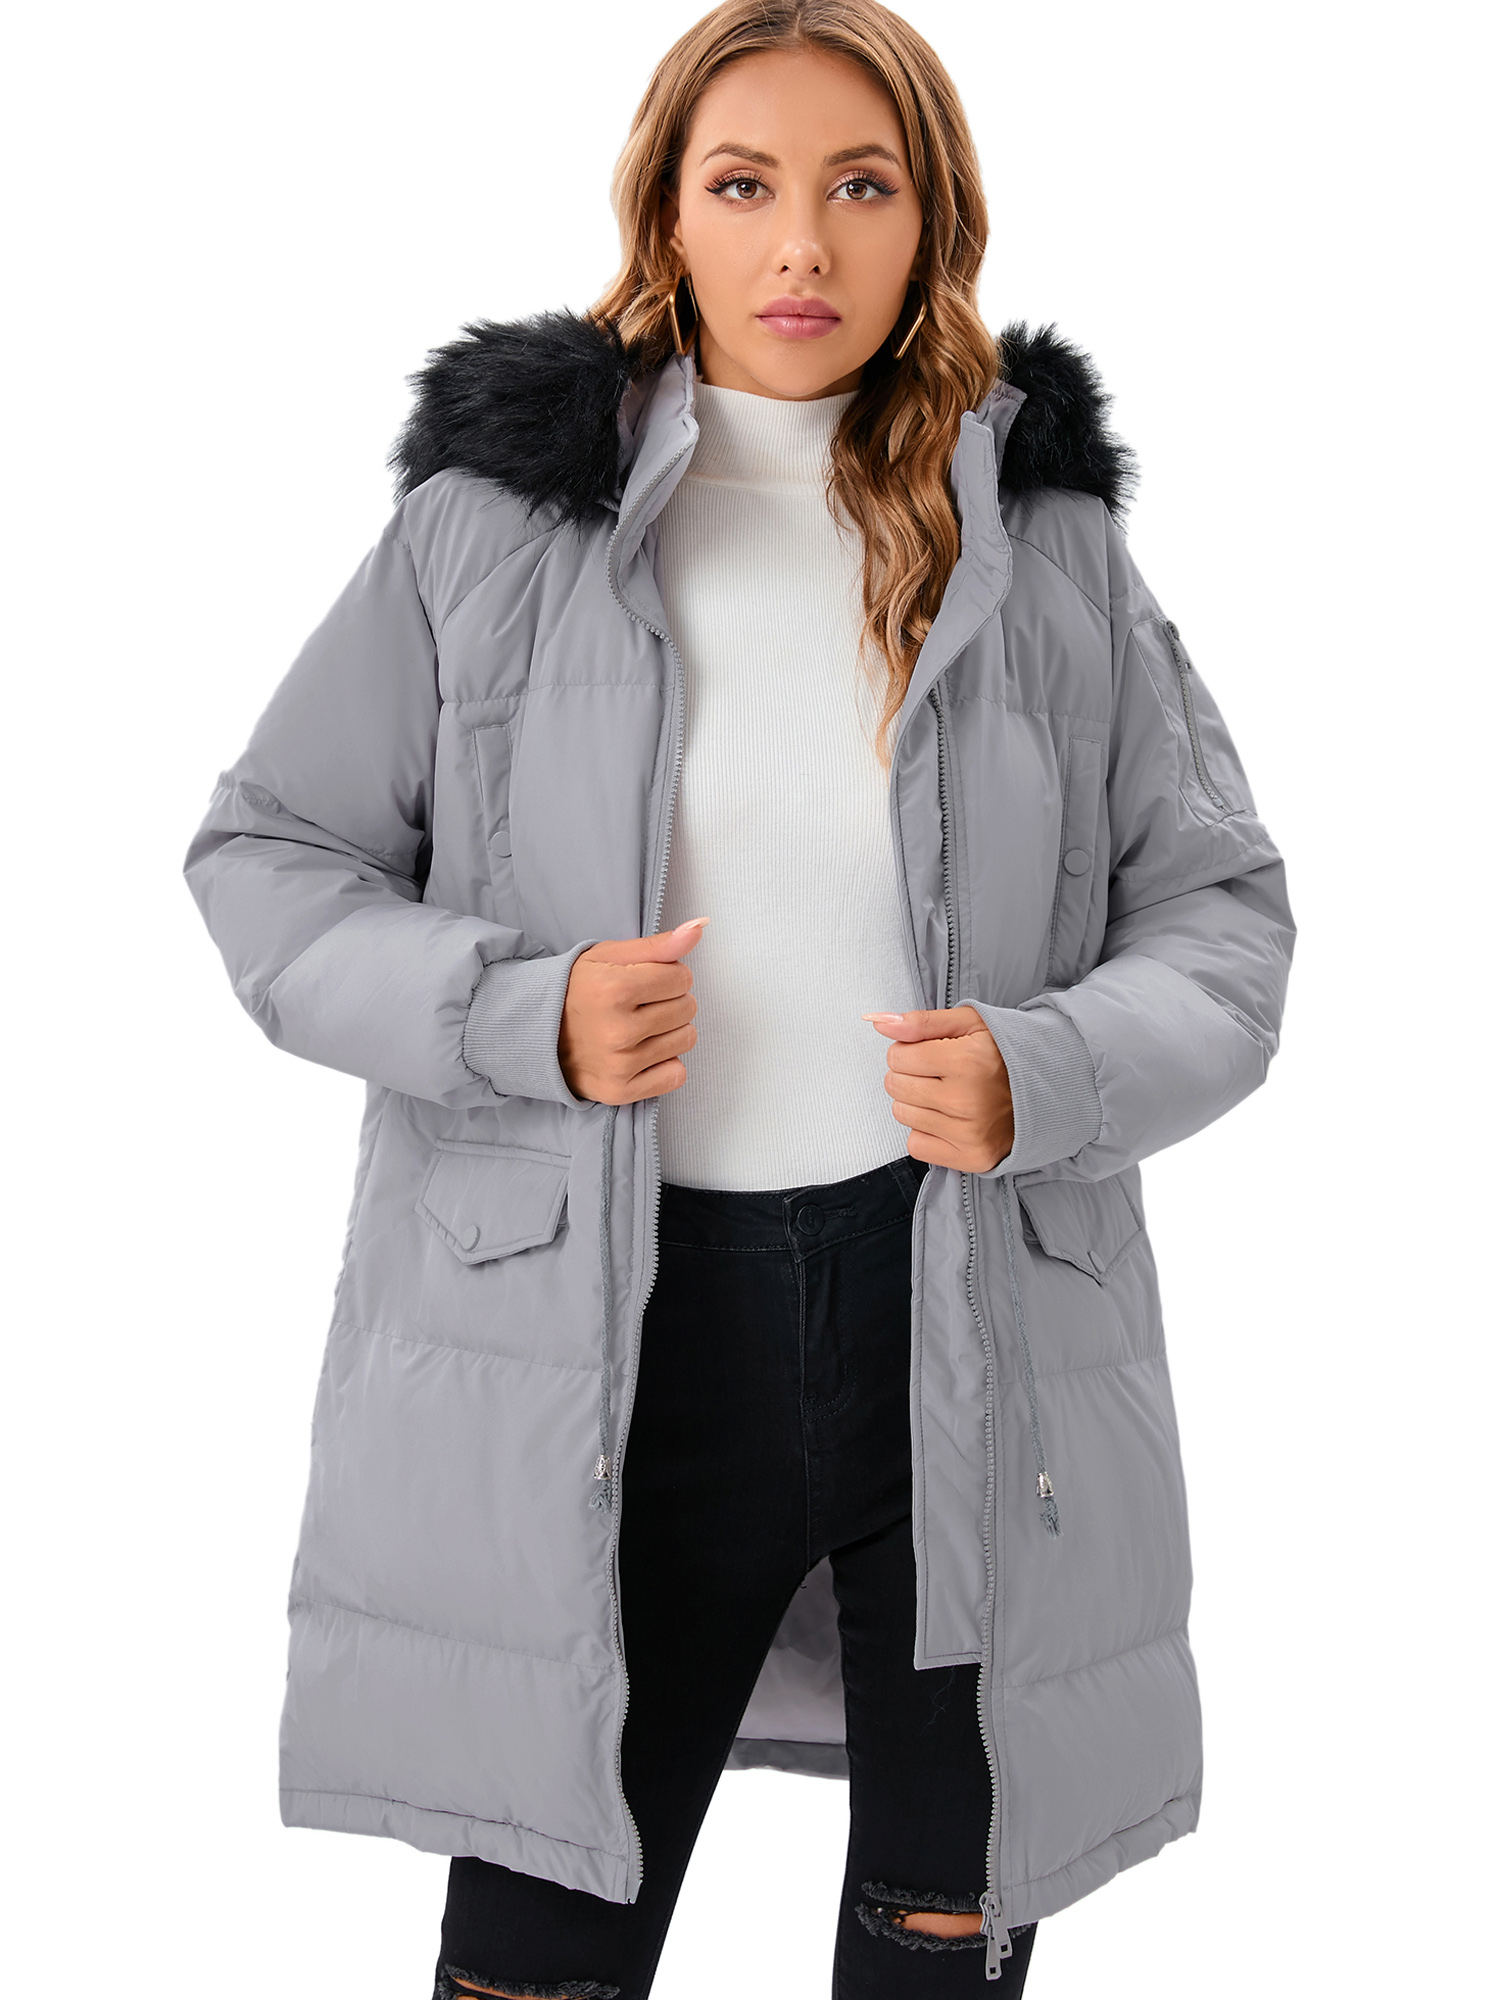 LELINTA Women's Heayweight Winter Warm Puffer Jacket Waterproof Rain Zip Parka Overcoats Jacket With Faux Fur Hooded - image 3 of 7